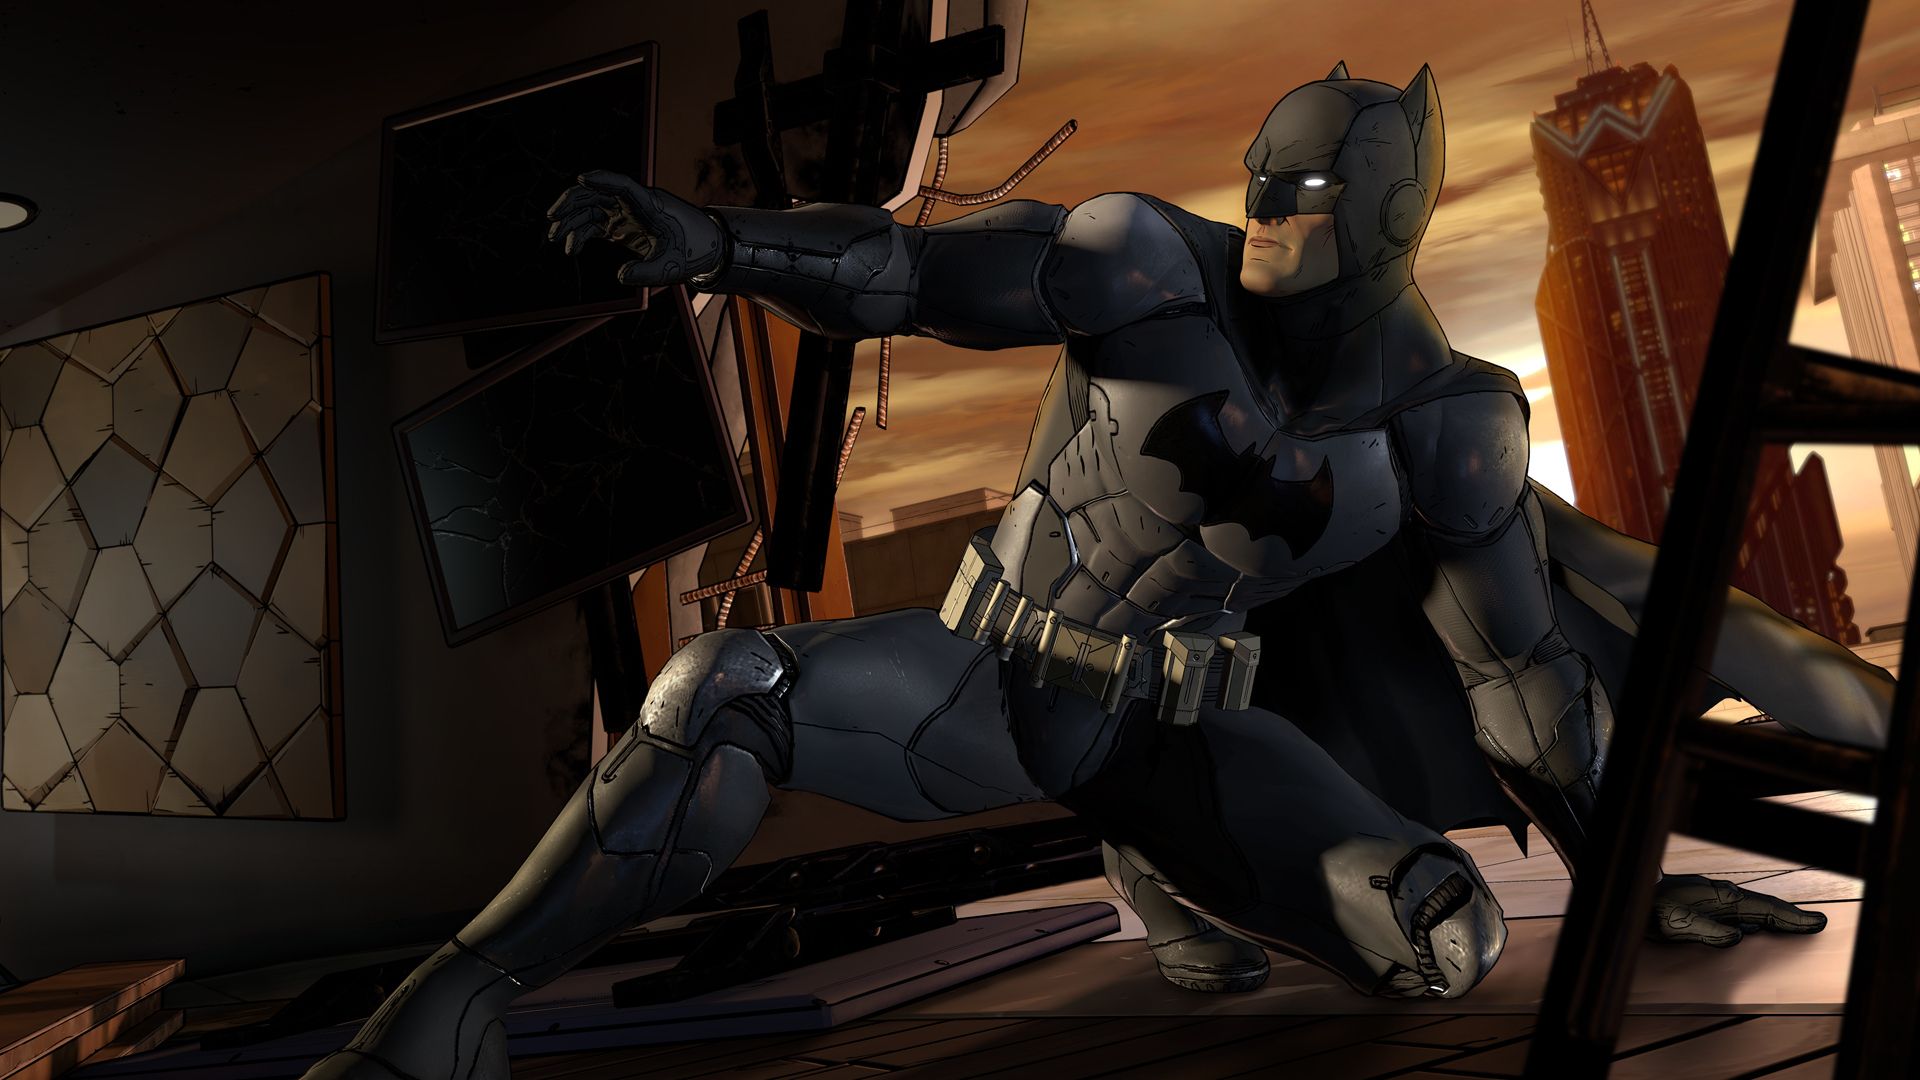 Giochi di Batman - Batman scivola su un tetto in una scena buia, con un ginocchio in alto e l'altro a terra.